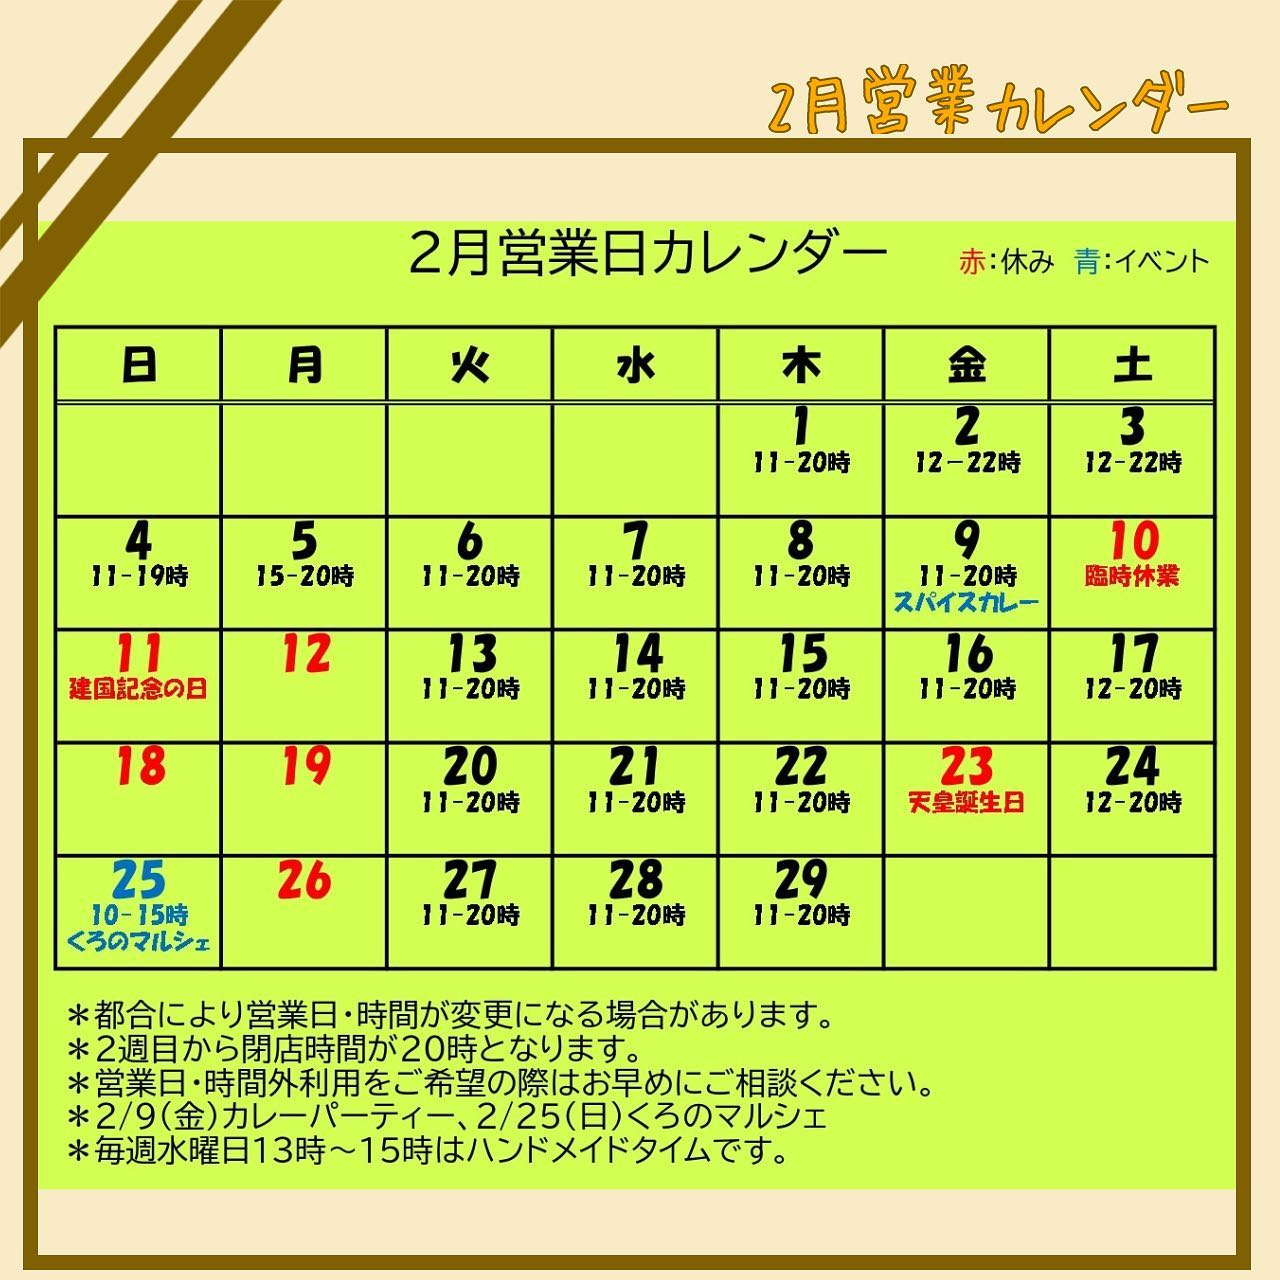 【2月営業カレンダー】